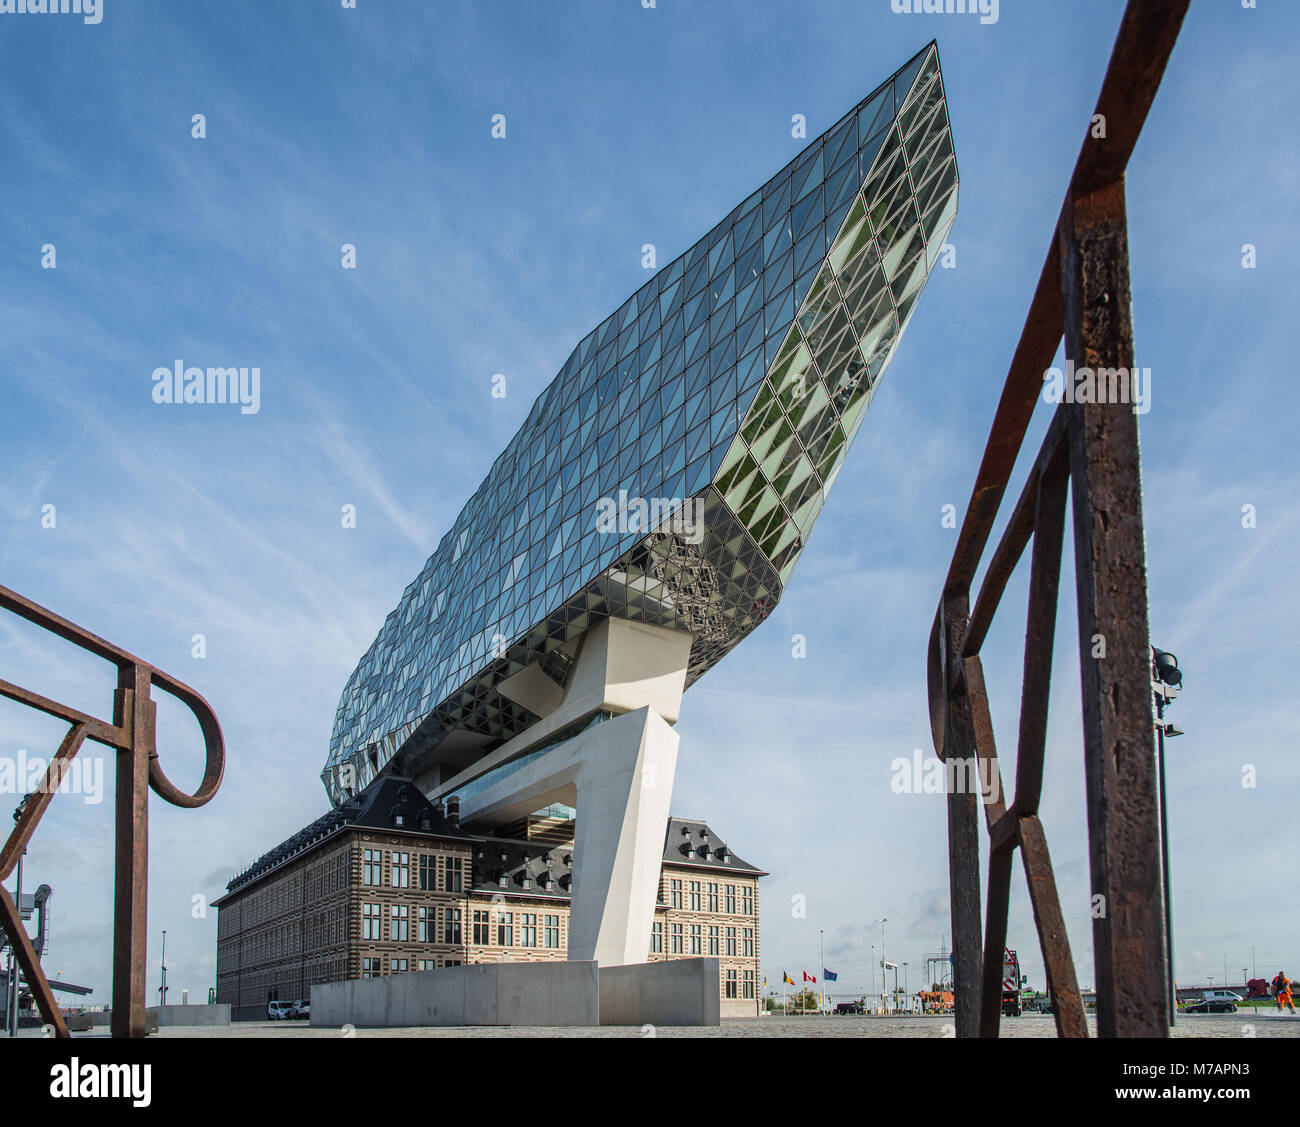 Nieuw Havenhuis (nuovo Harbor House), uno dei progetti finali dell'architetto Zaha Hadid, Anversa (Antwerpen), nelle Fiandre, in Belgio, Europa Foto Stock